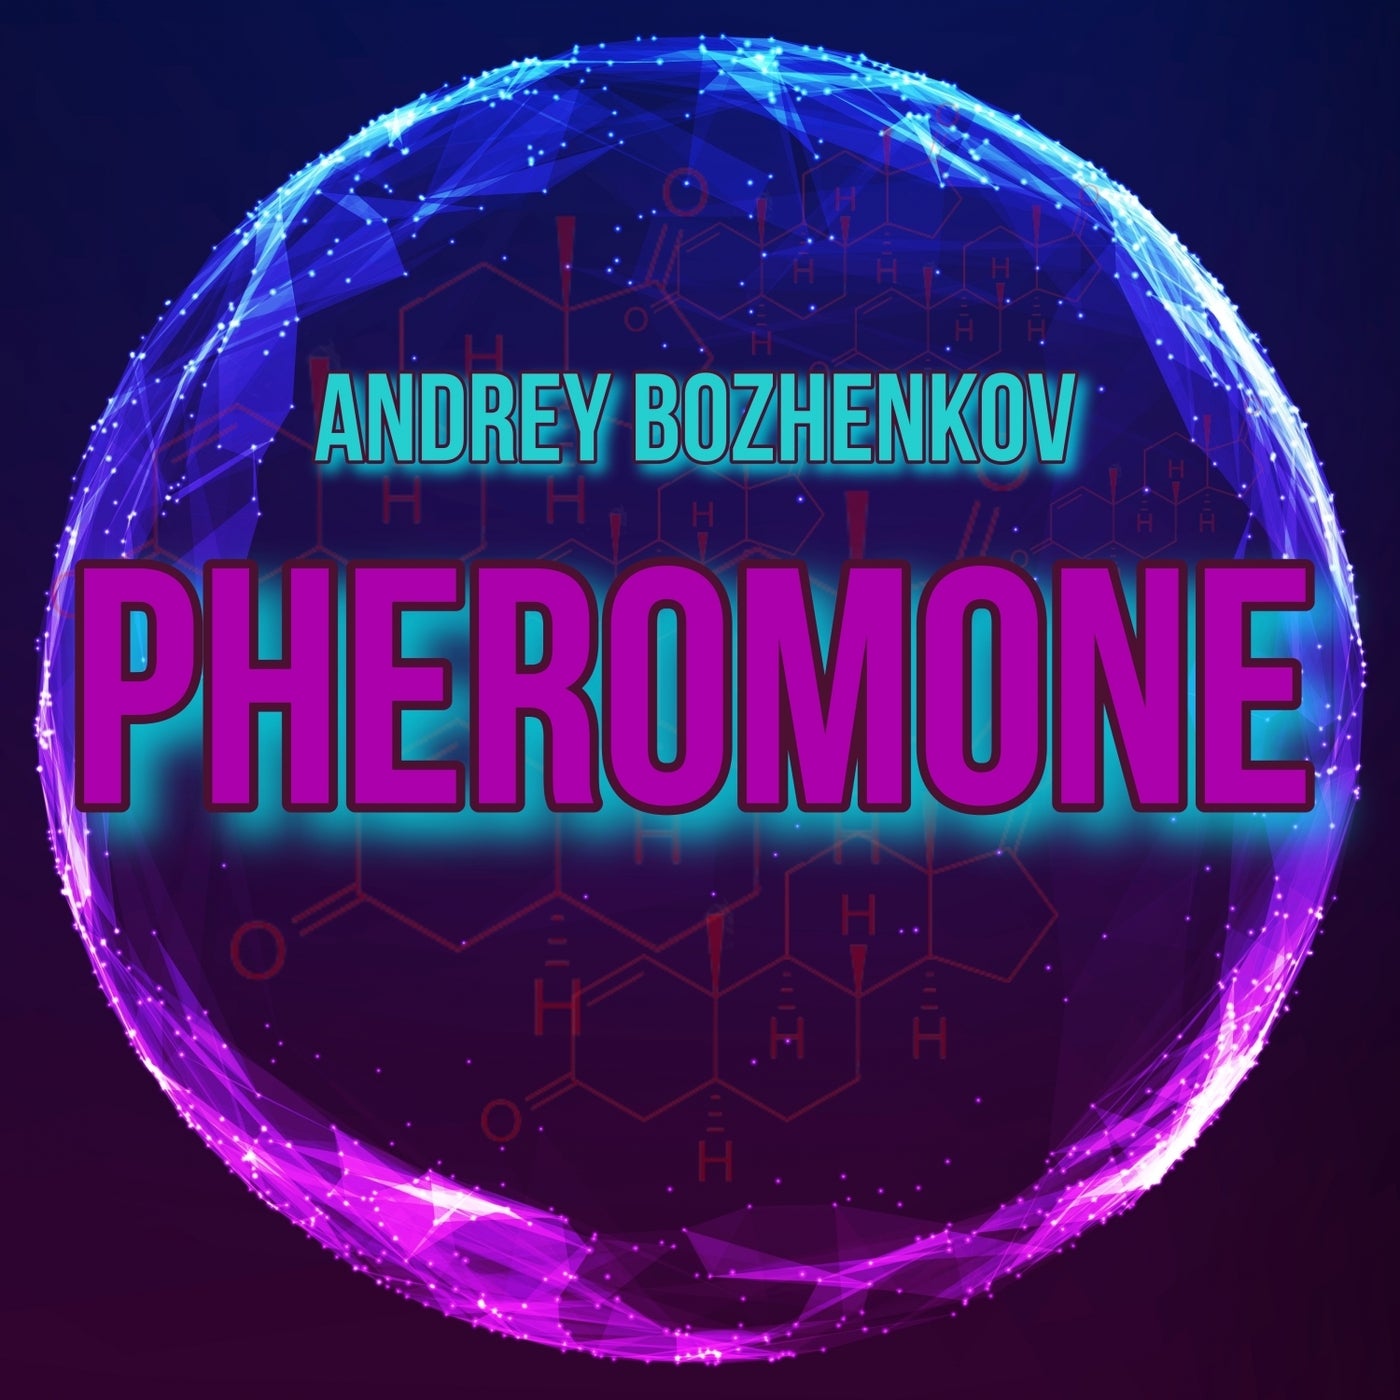 Pheromone